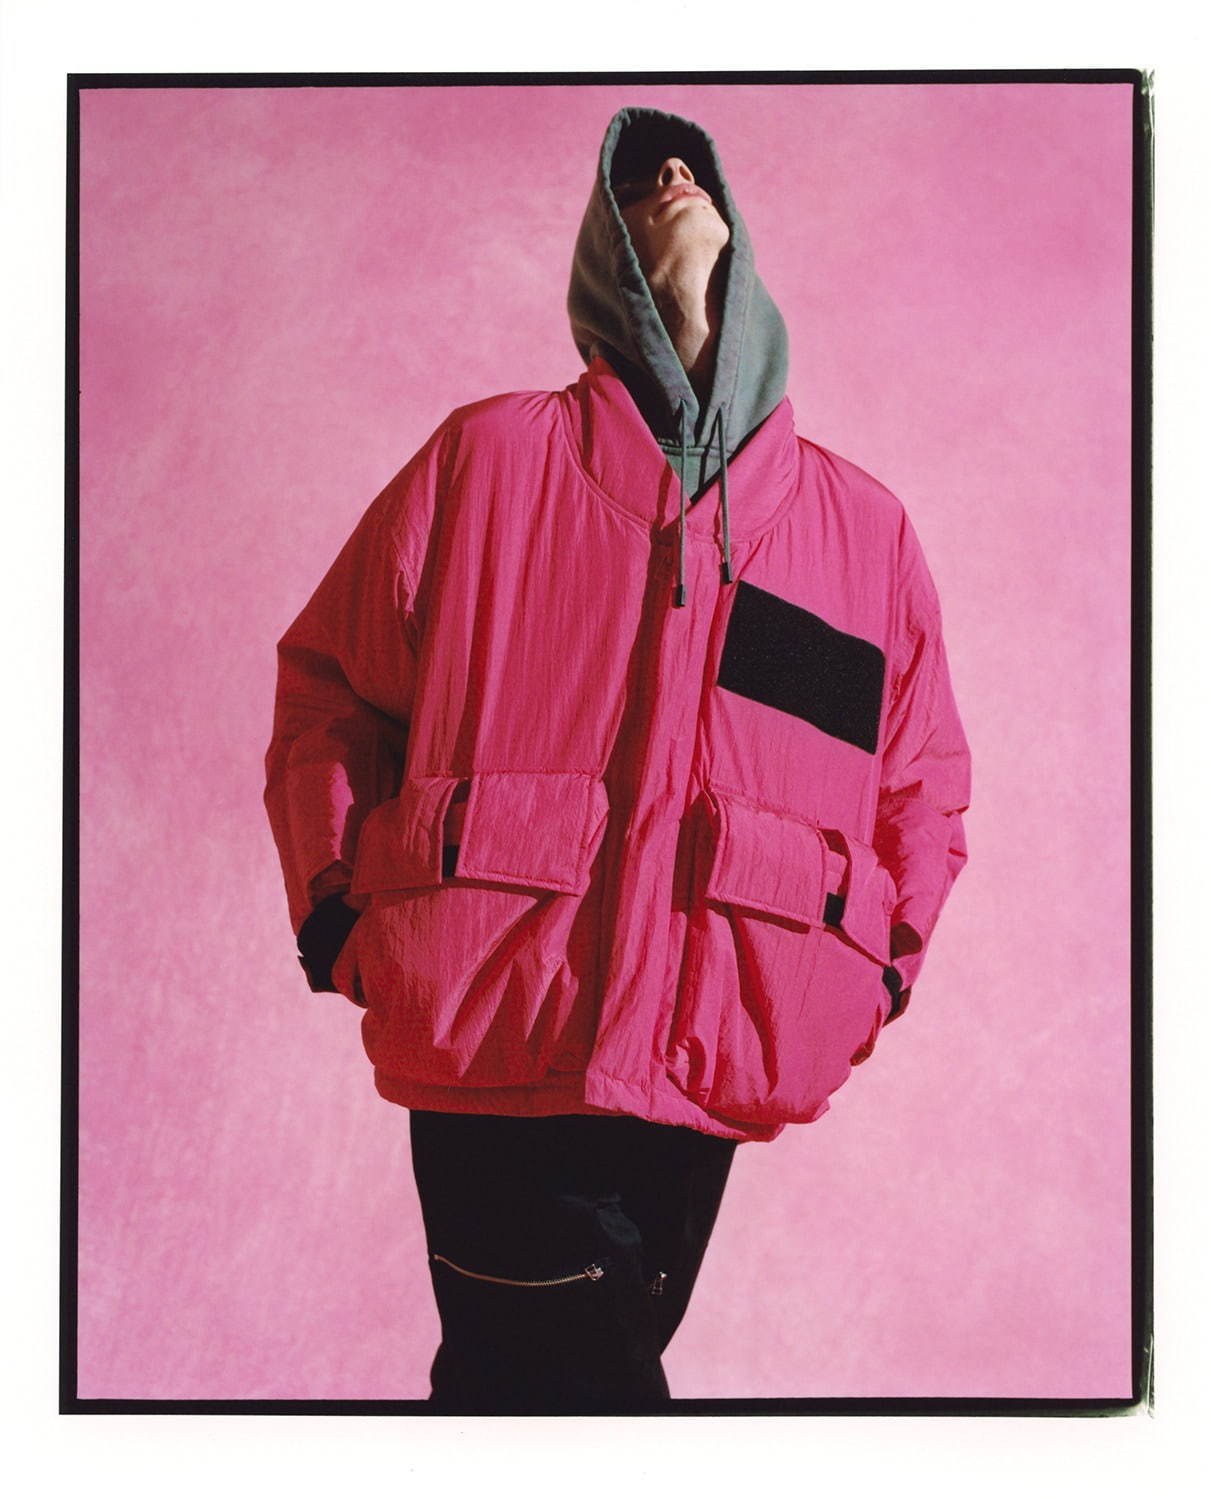 ロトル(ROTOL) 2020-21年秋冬メンズコレクション - ファッションプレス